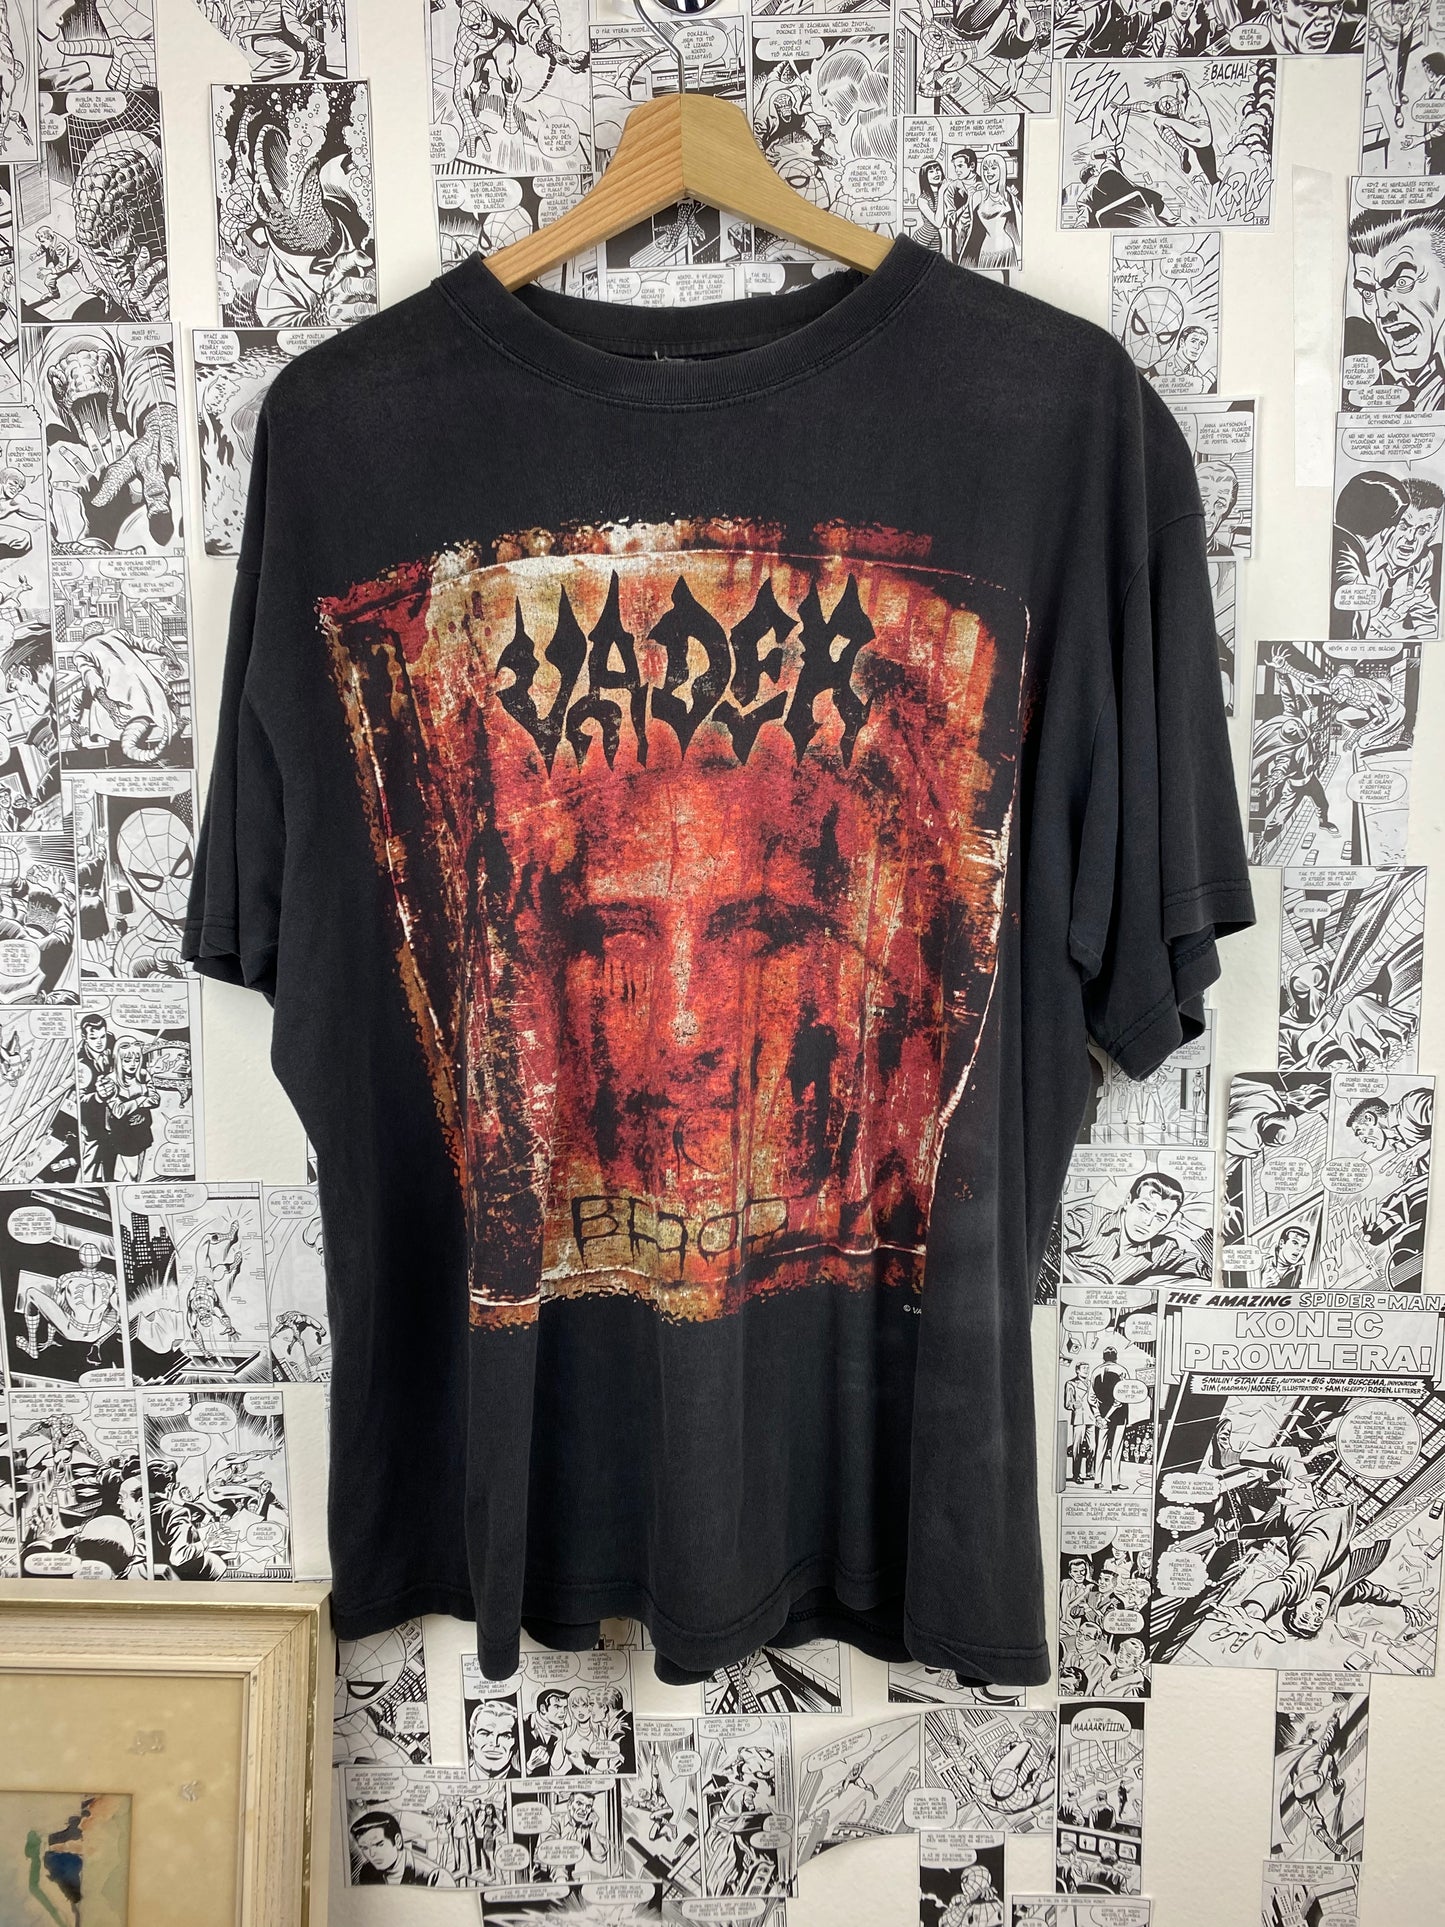 Vintage Vader “Blood Reign Forever” 2003 t-shirt - size L